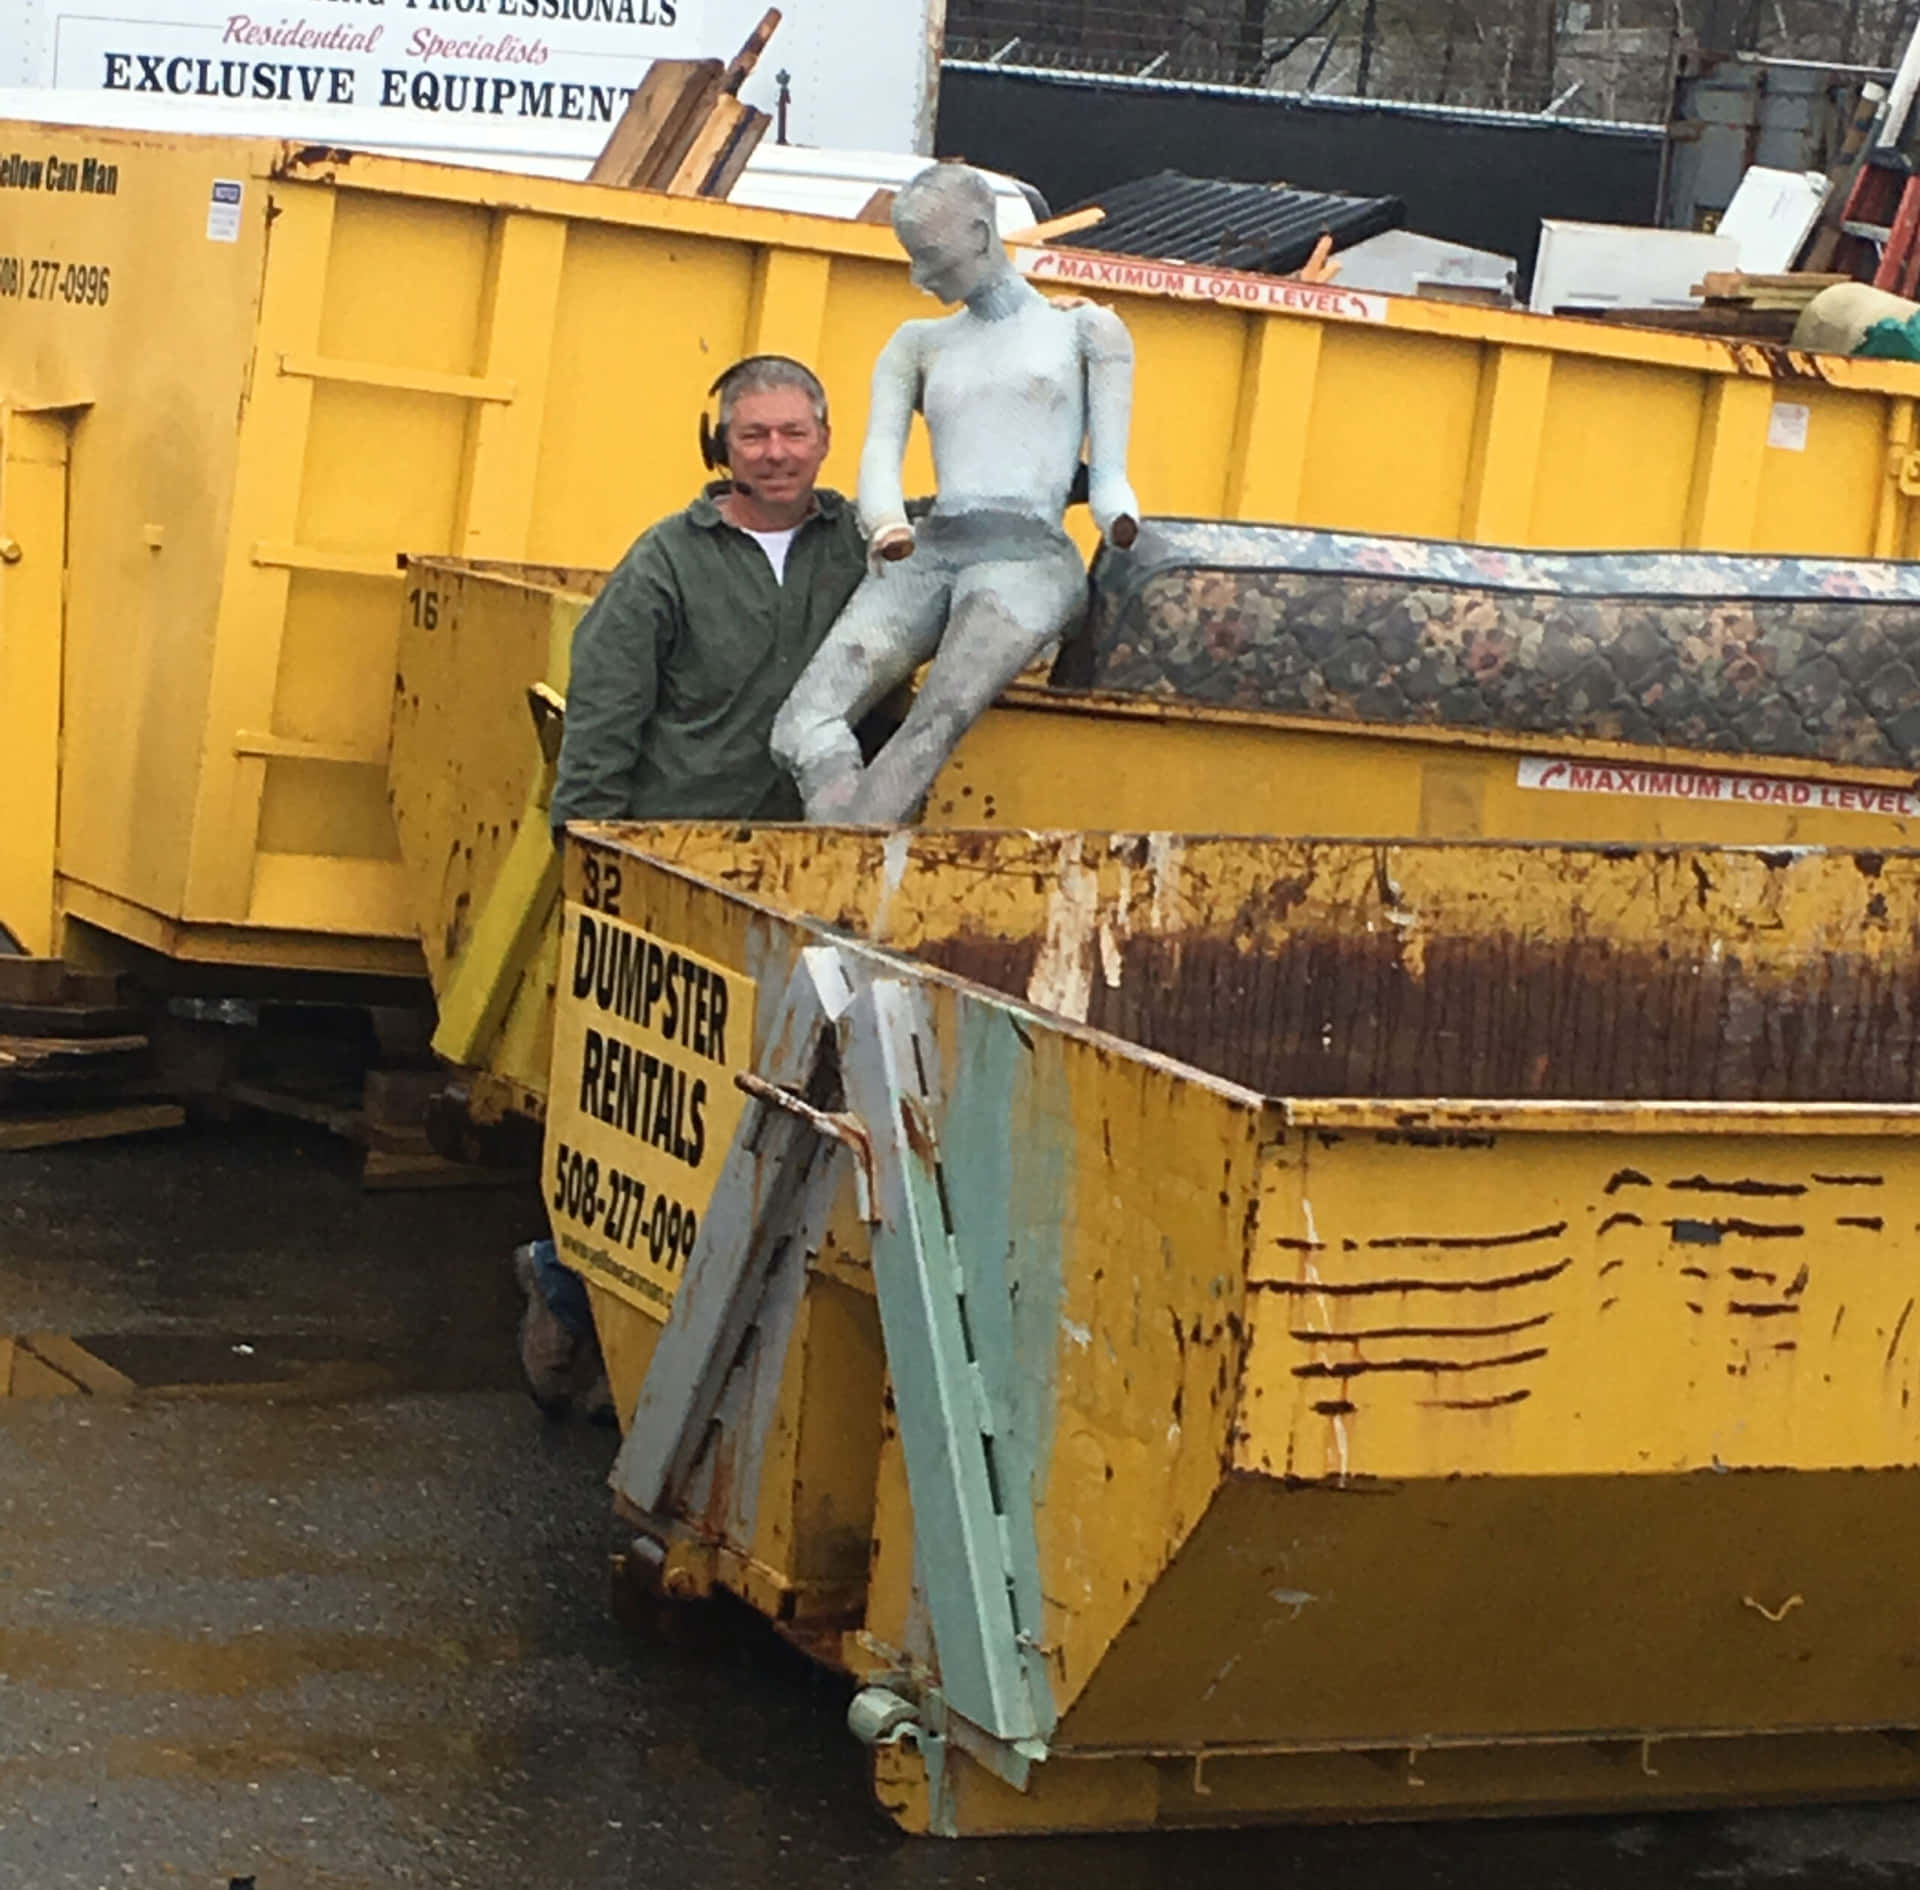 A Man Standing Next To A Yellow Dump Truck